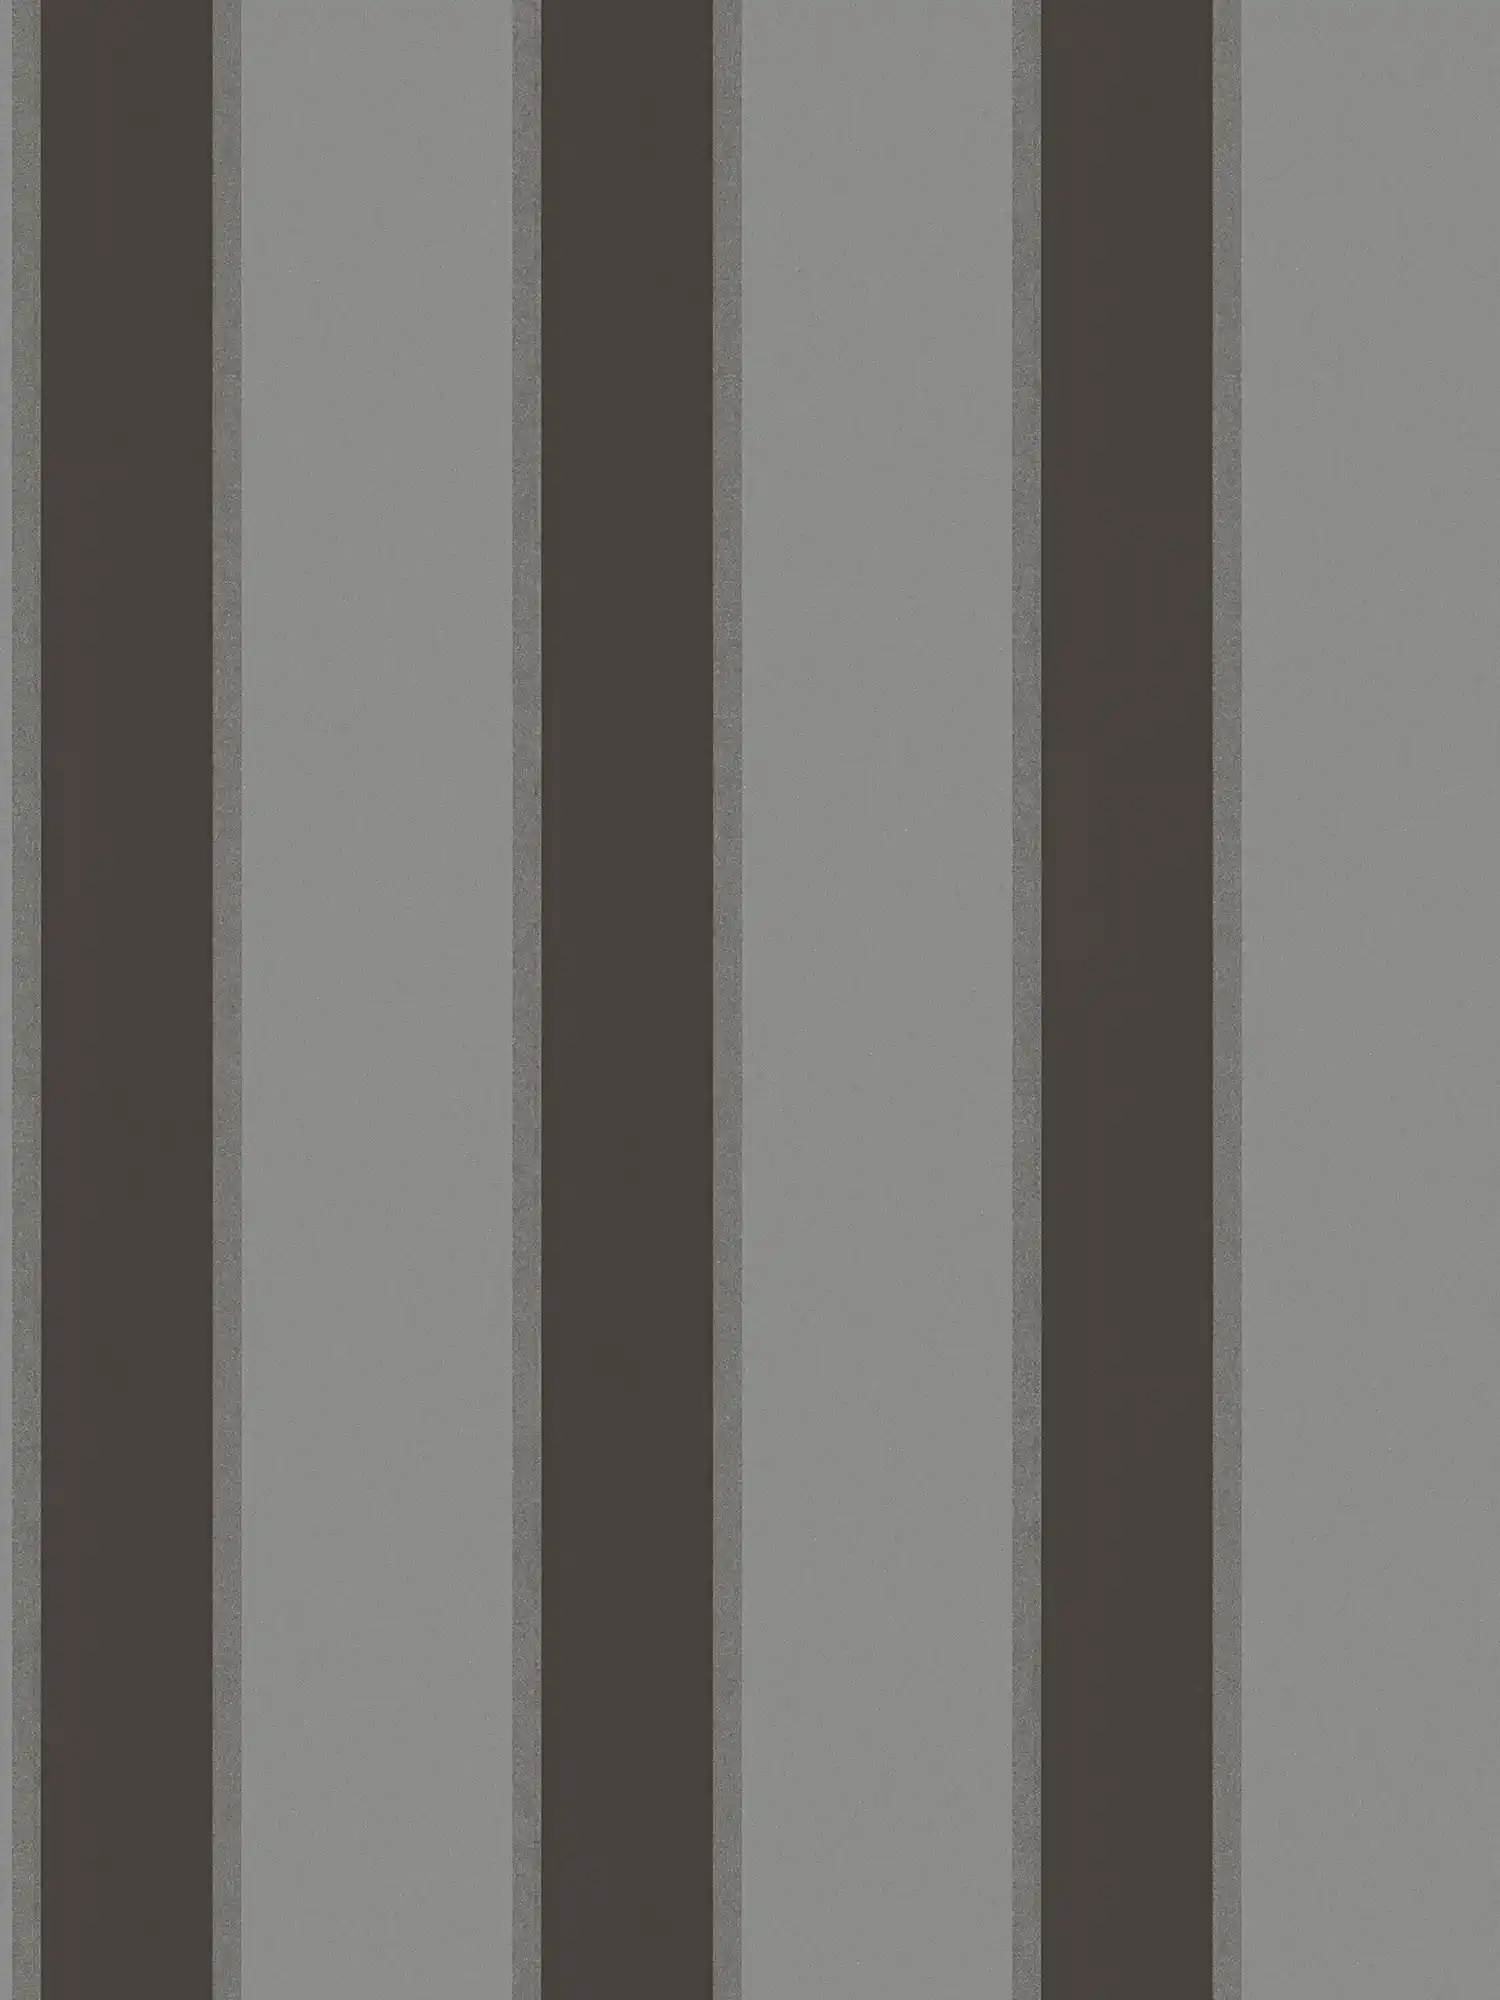         Metallic Tapete mit Streifen Muster – Grau, Schwarz
    